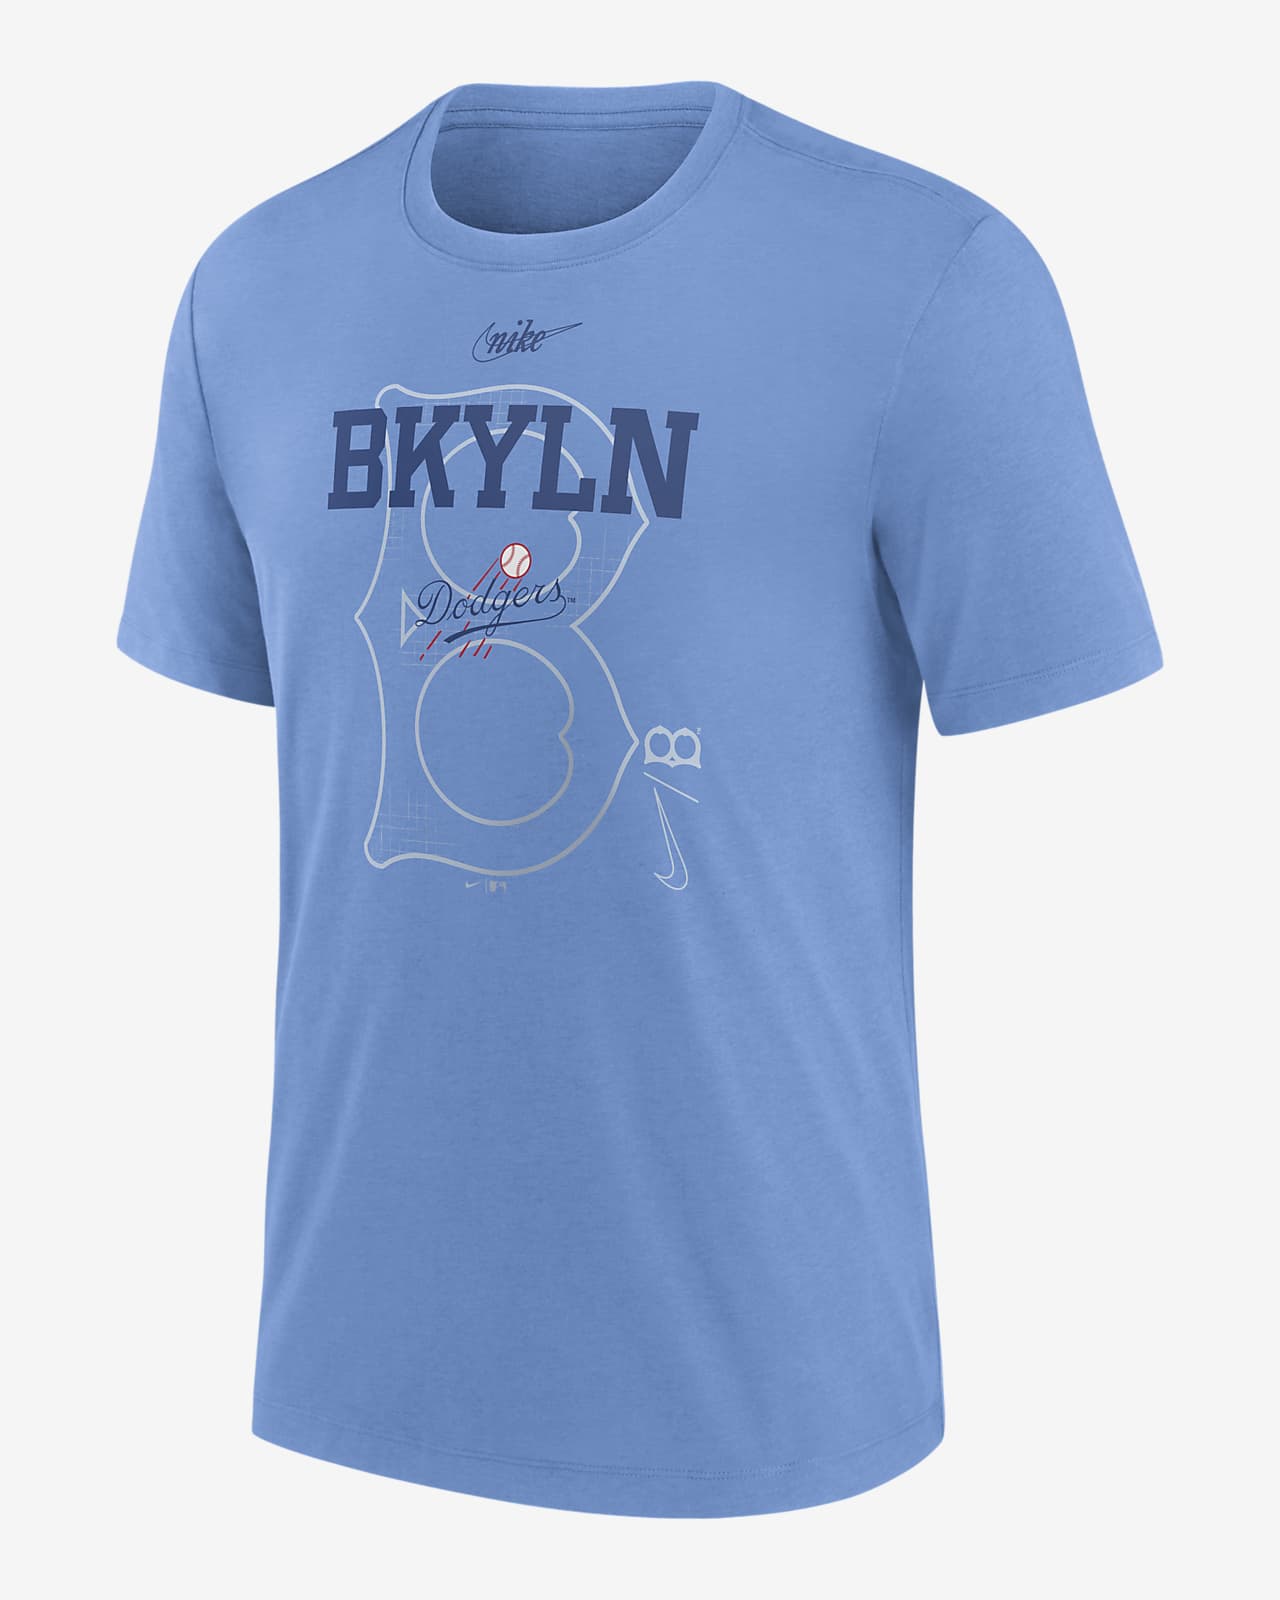 Nike Rewind Retro (MLB Brooklyn Dodgers) Men's T-Shirt.